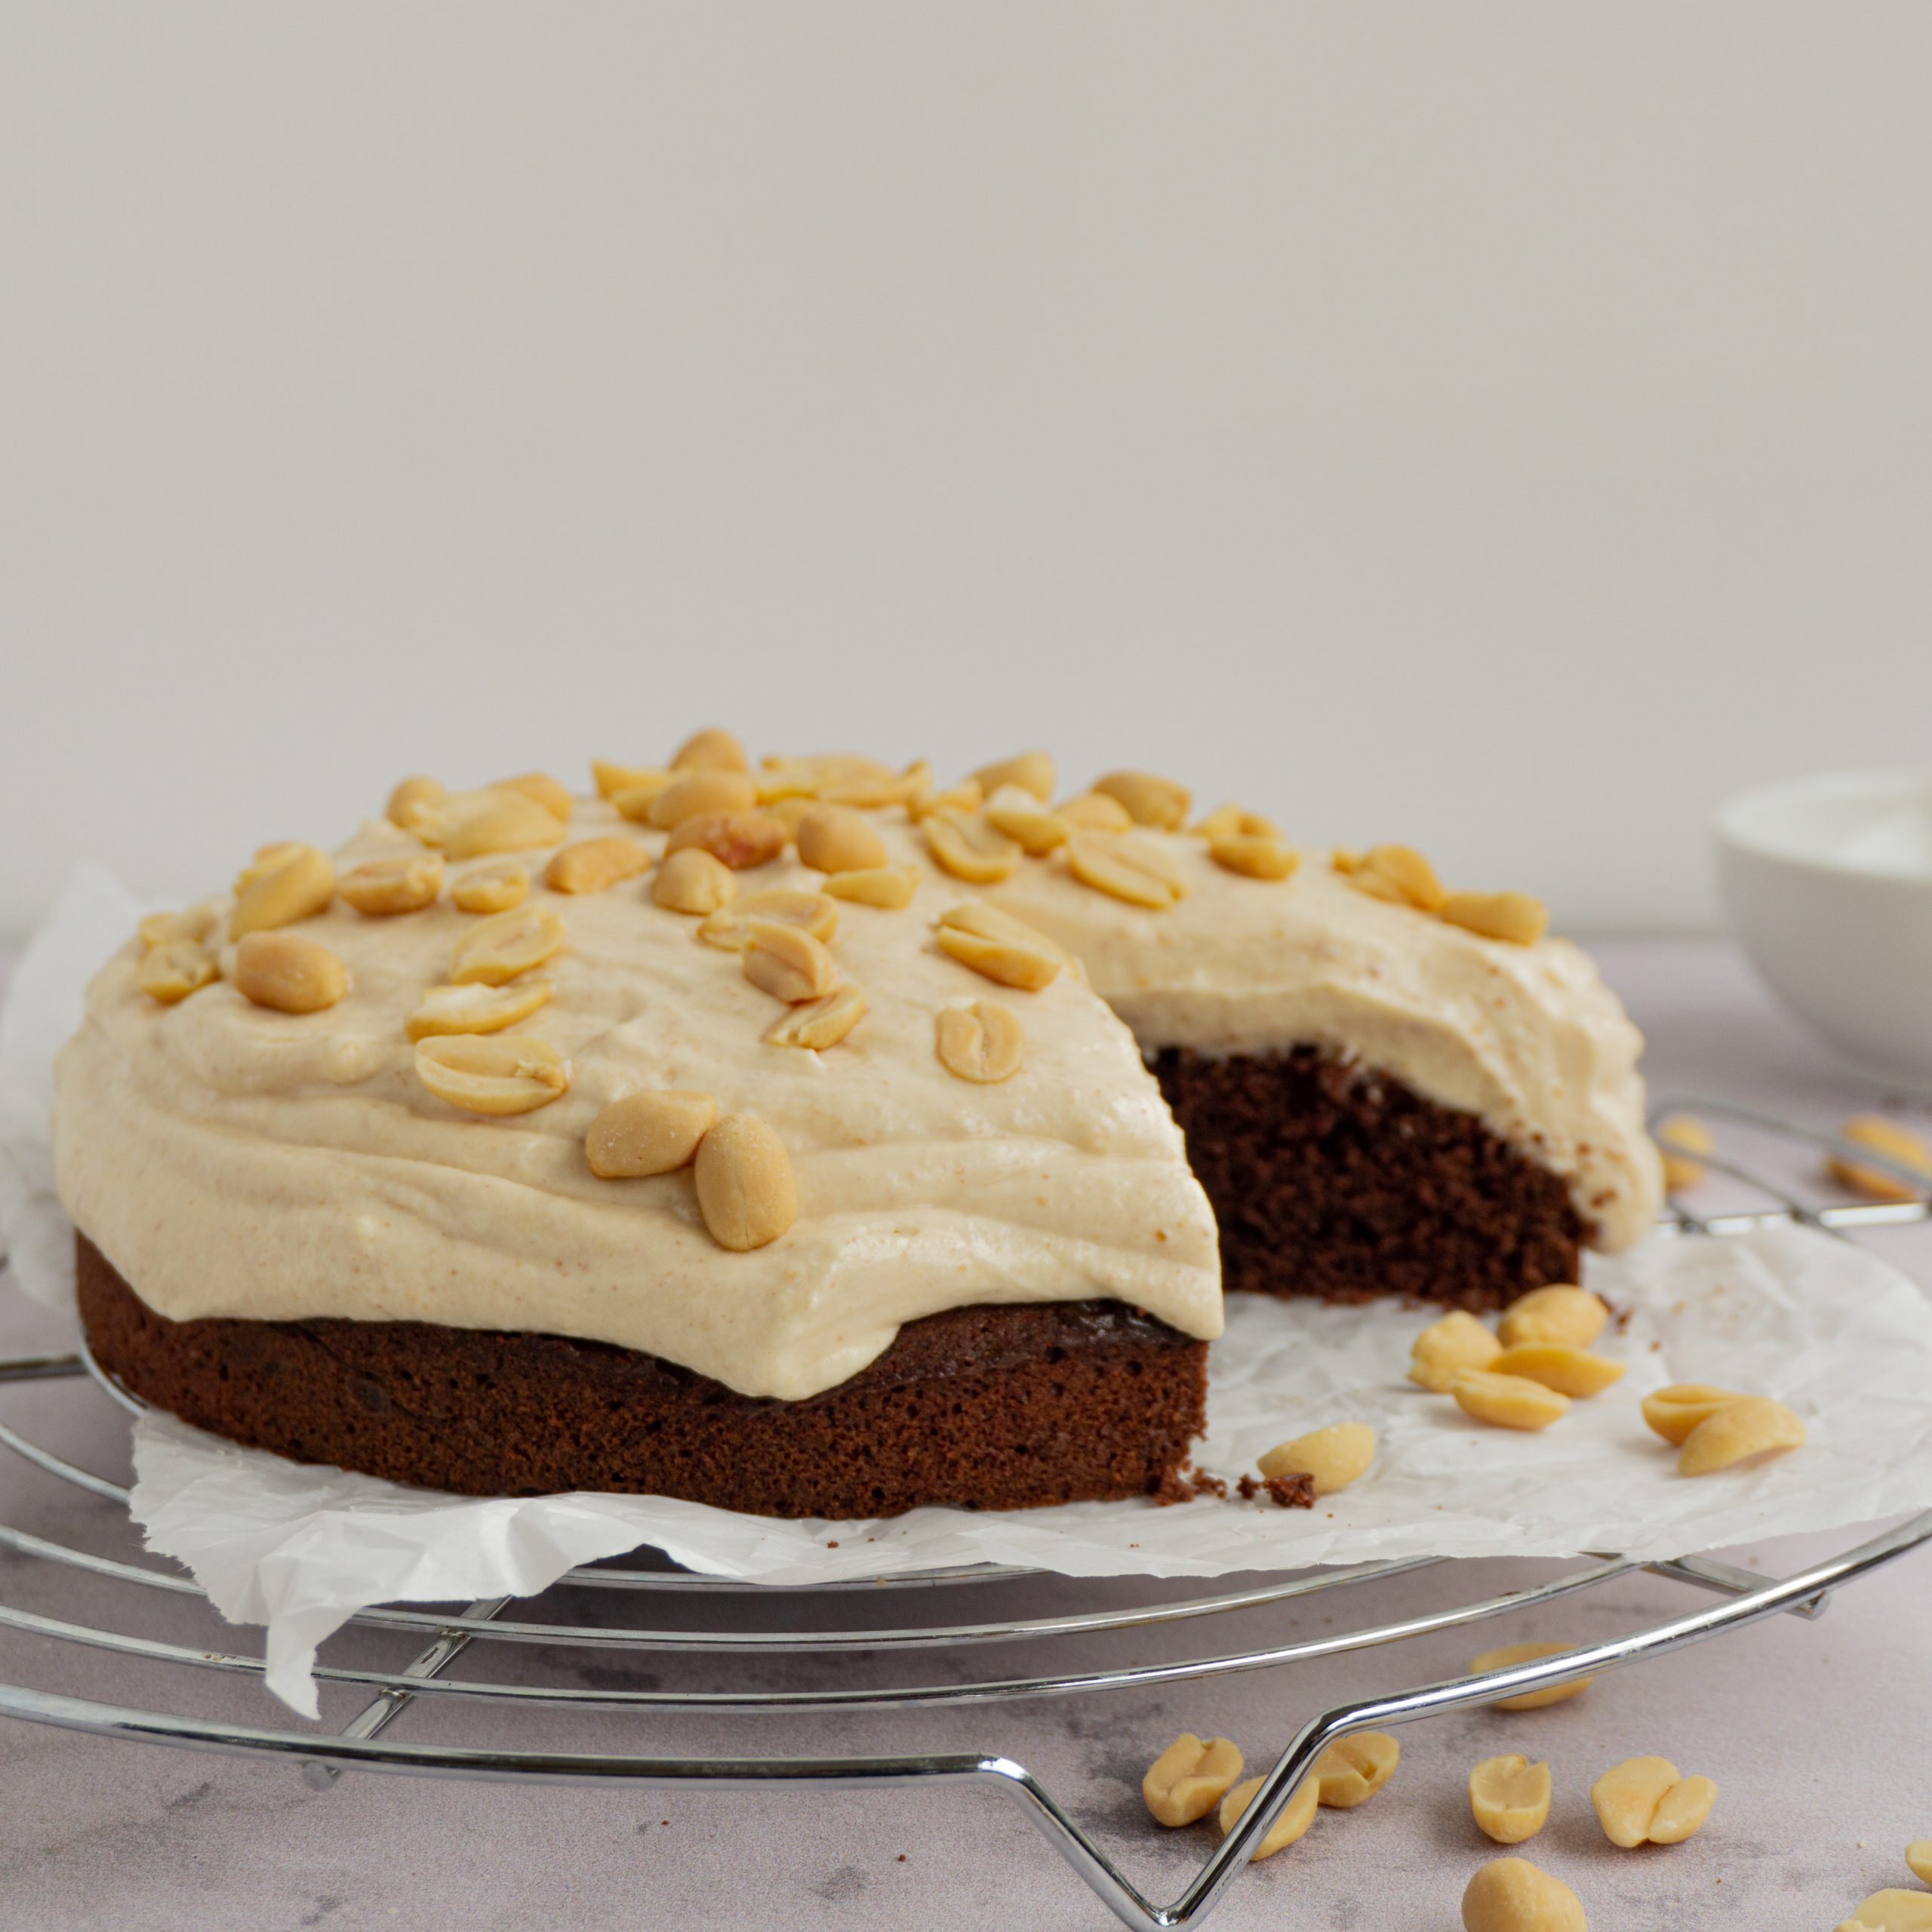 Dieses Bild zeigt einen Schokoladenkuchen mit einem cremigen Frosting aus Sahne, Quark und Erdnussbutter